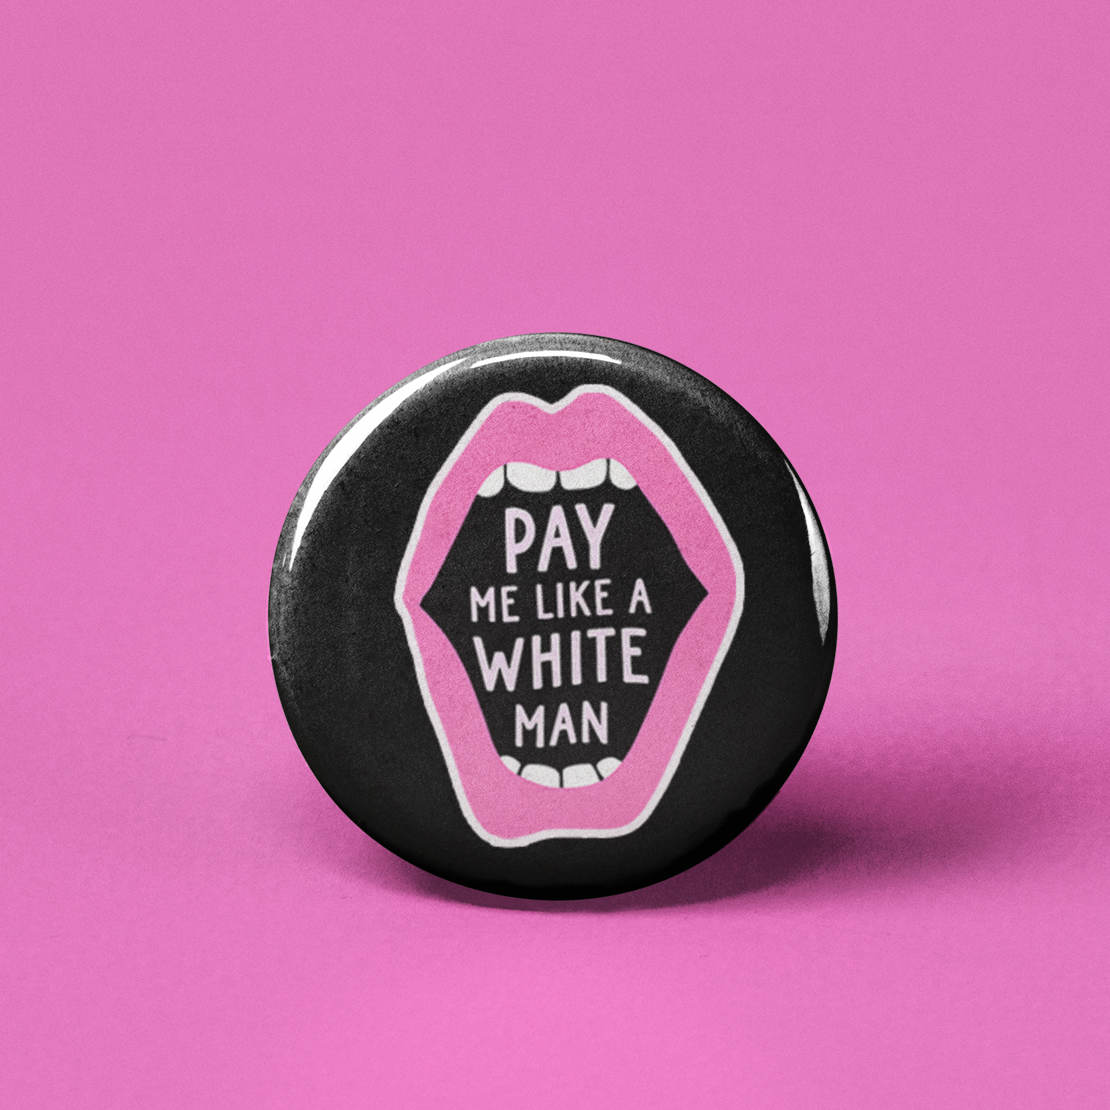 The Pin Pal Club - Pay Me Like a White Man Pinback Button